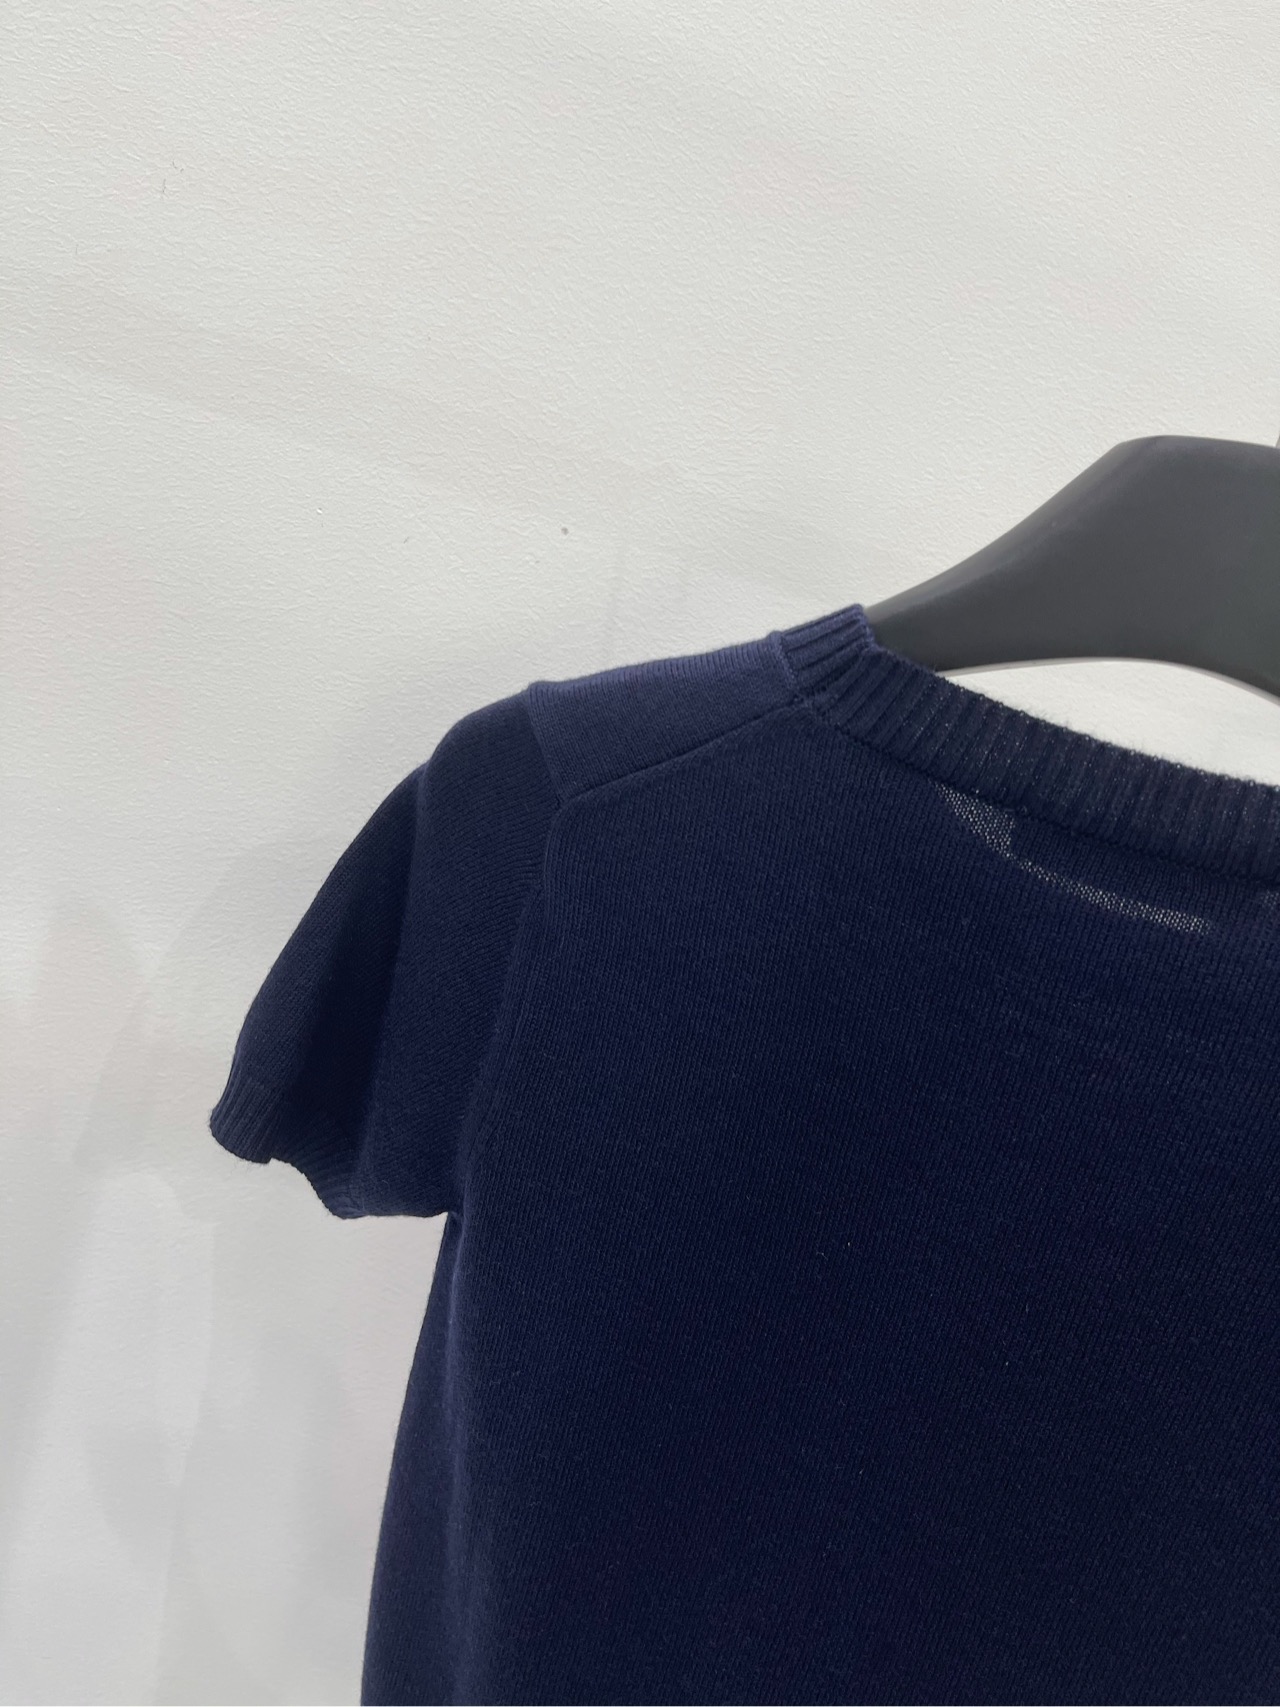 爆買い品質保証 ミュウミュウ ツイリー激安通販 Tシャツ トップス 短袖 純綿 シンプル ブルー_7